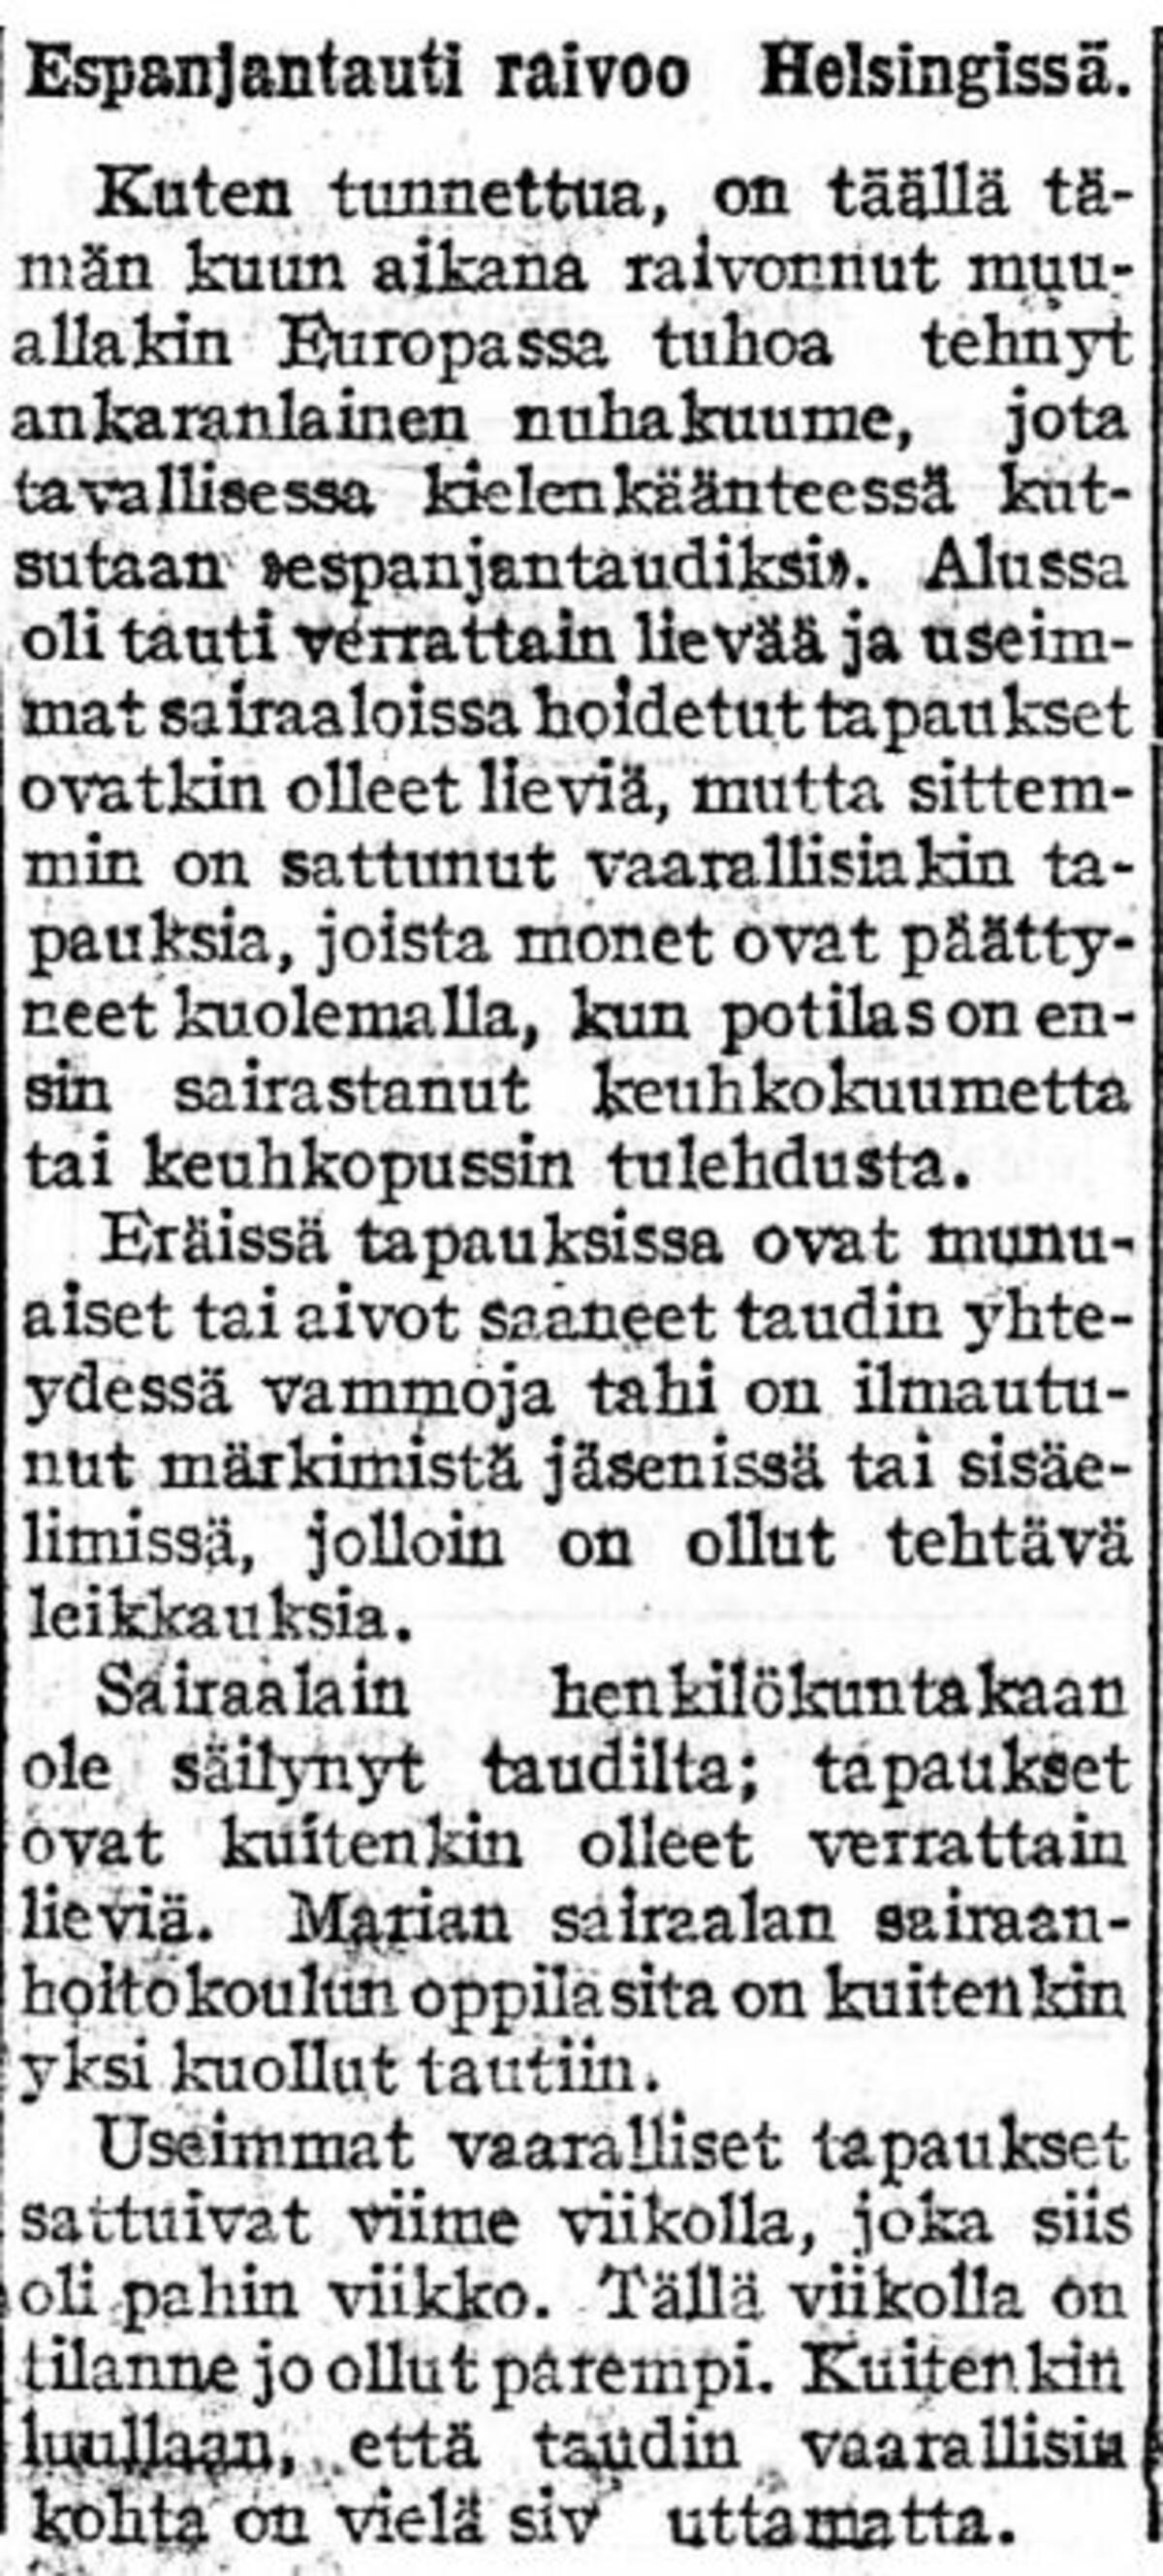 Espanjantaudista alettiin kirjoittaa suomalaislehdissä heinäkuussa 1918. Epidemia alkoi suhteellisen lievänä, mutta vaikeampia aikoja osattiin pelätä. Työn Valta, 27.7.1918, nro 79, s. 3. Kansalliskirjaston digitaaliset aineisto Kuvaaja: Kansalliskirjasto